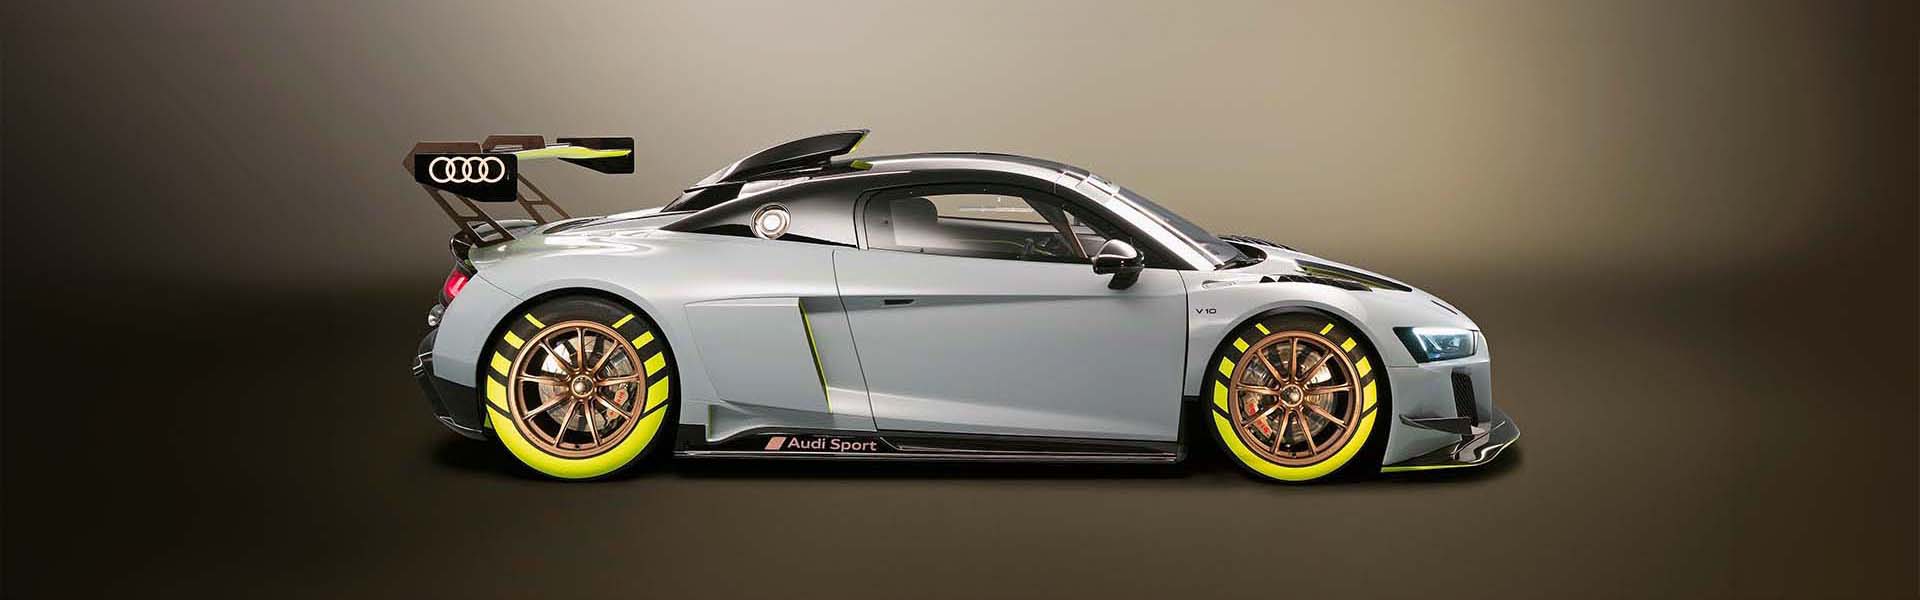 Audi R8 LMS GT2